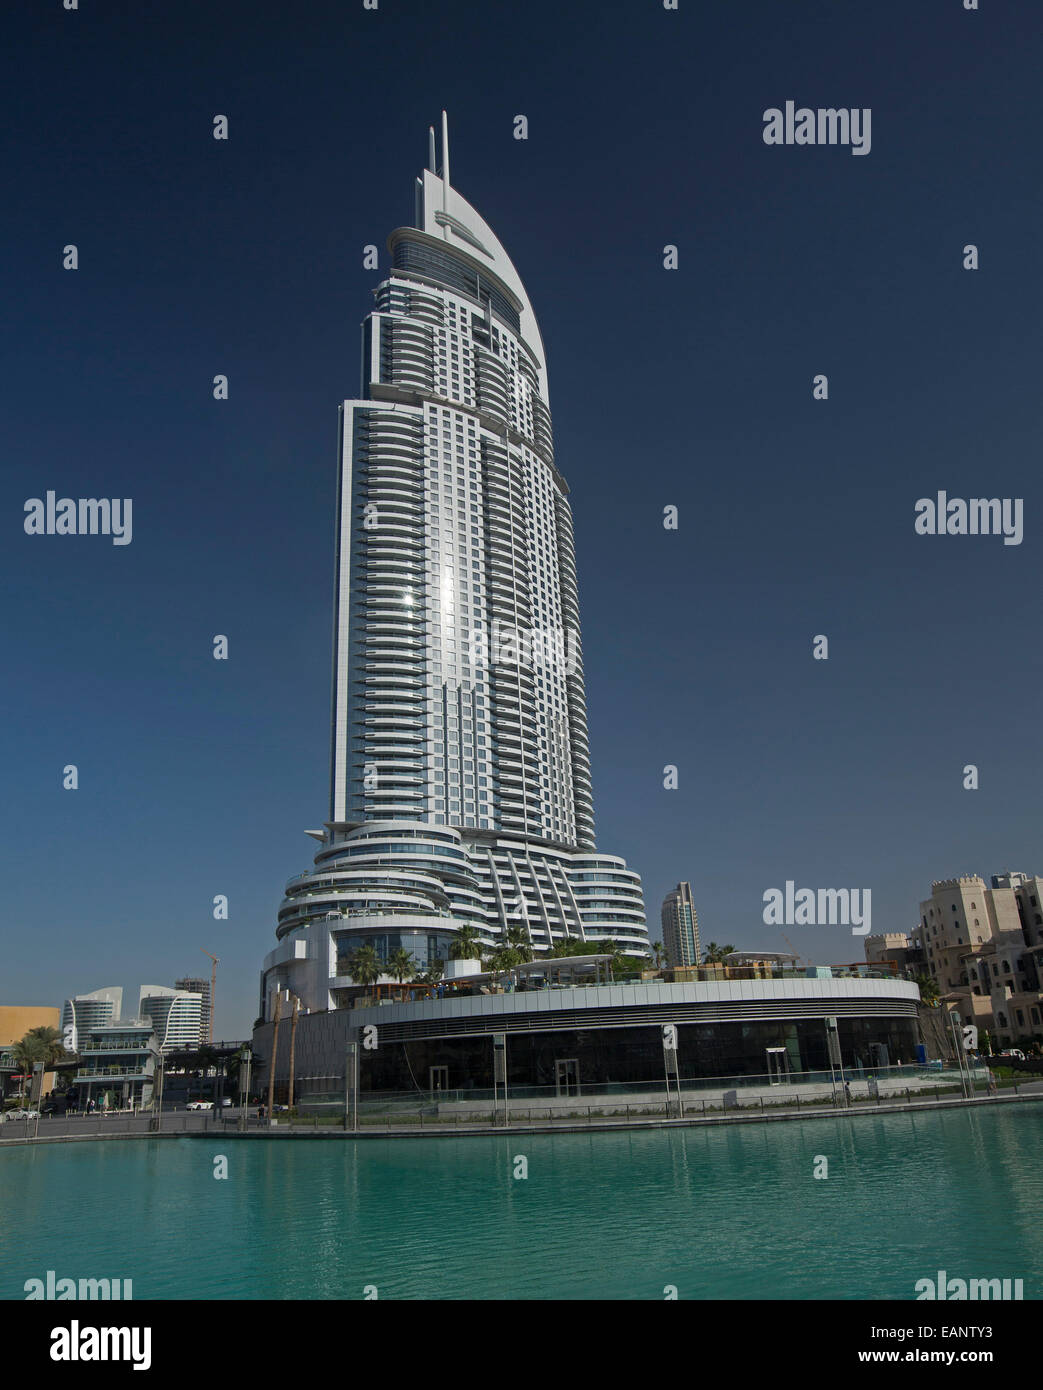 La dirección Downtown Burj Dubai skyscraper / hotel de lujo al lado de un inmenso lago artificial cerca del centro comercial Dubai Mall y el aumento en el cielo azul Foto de stock